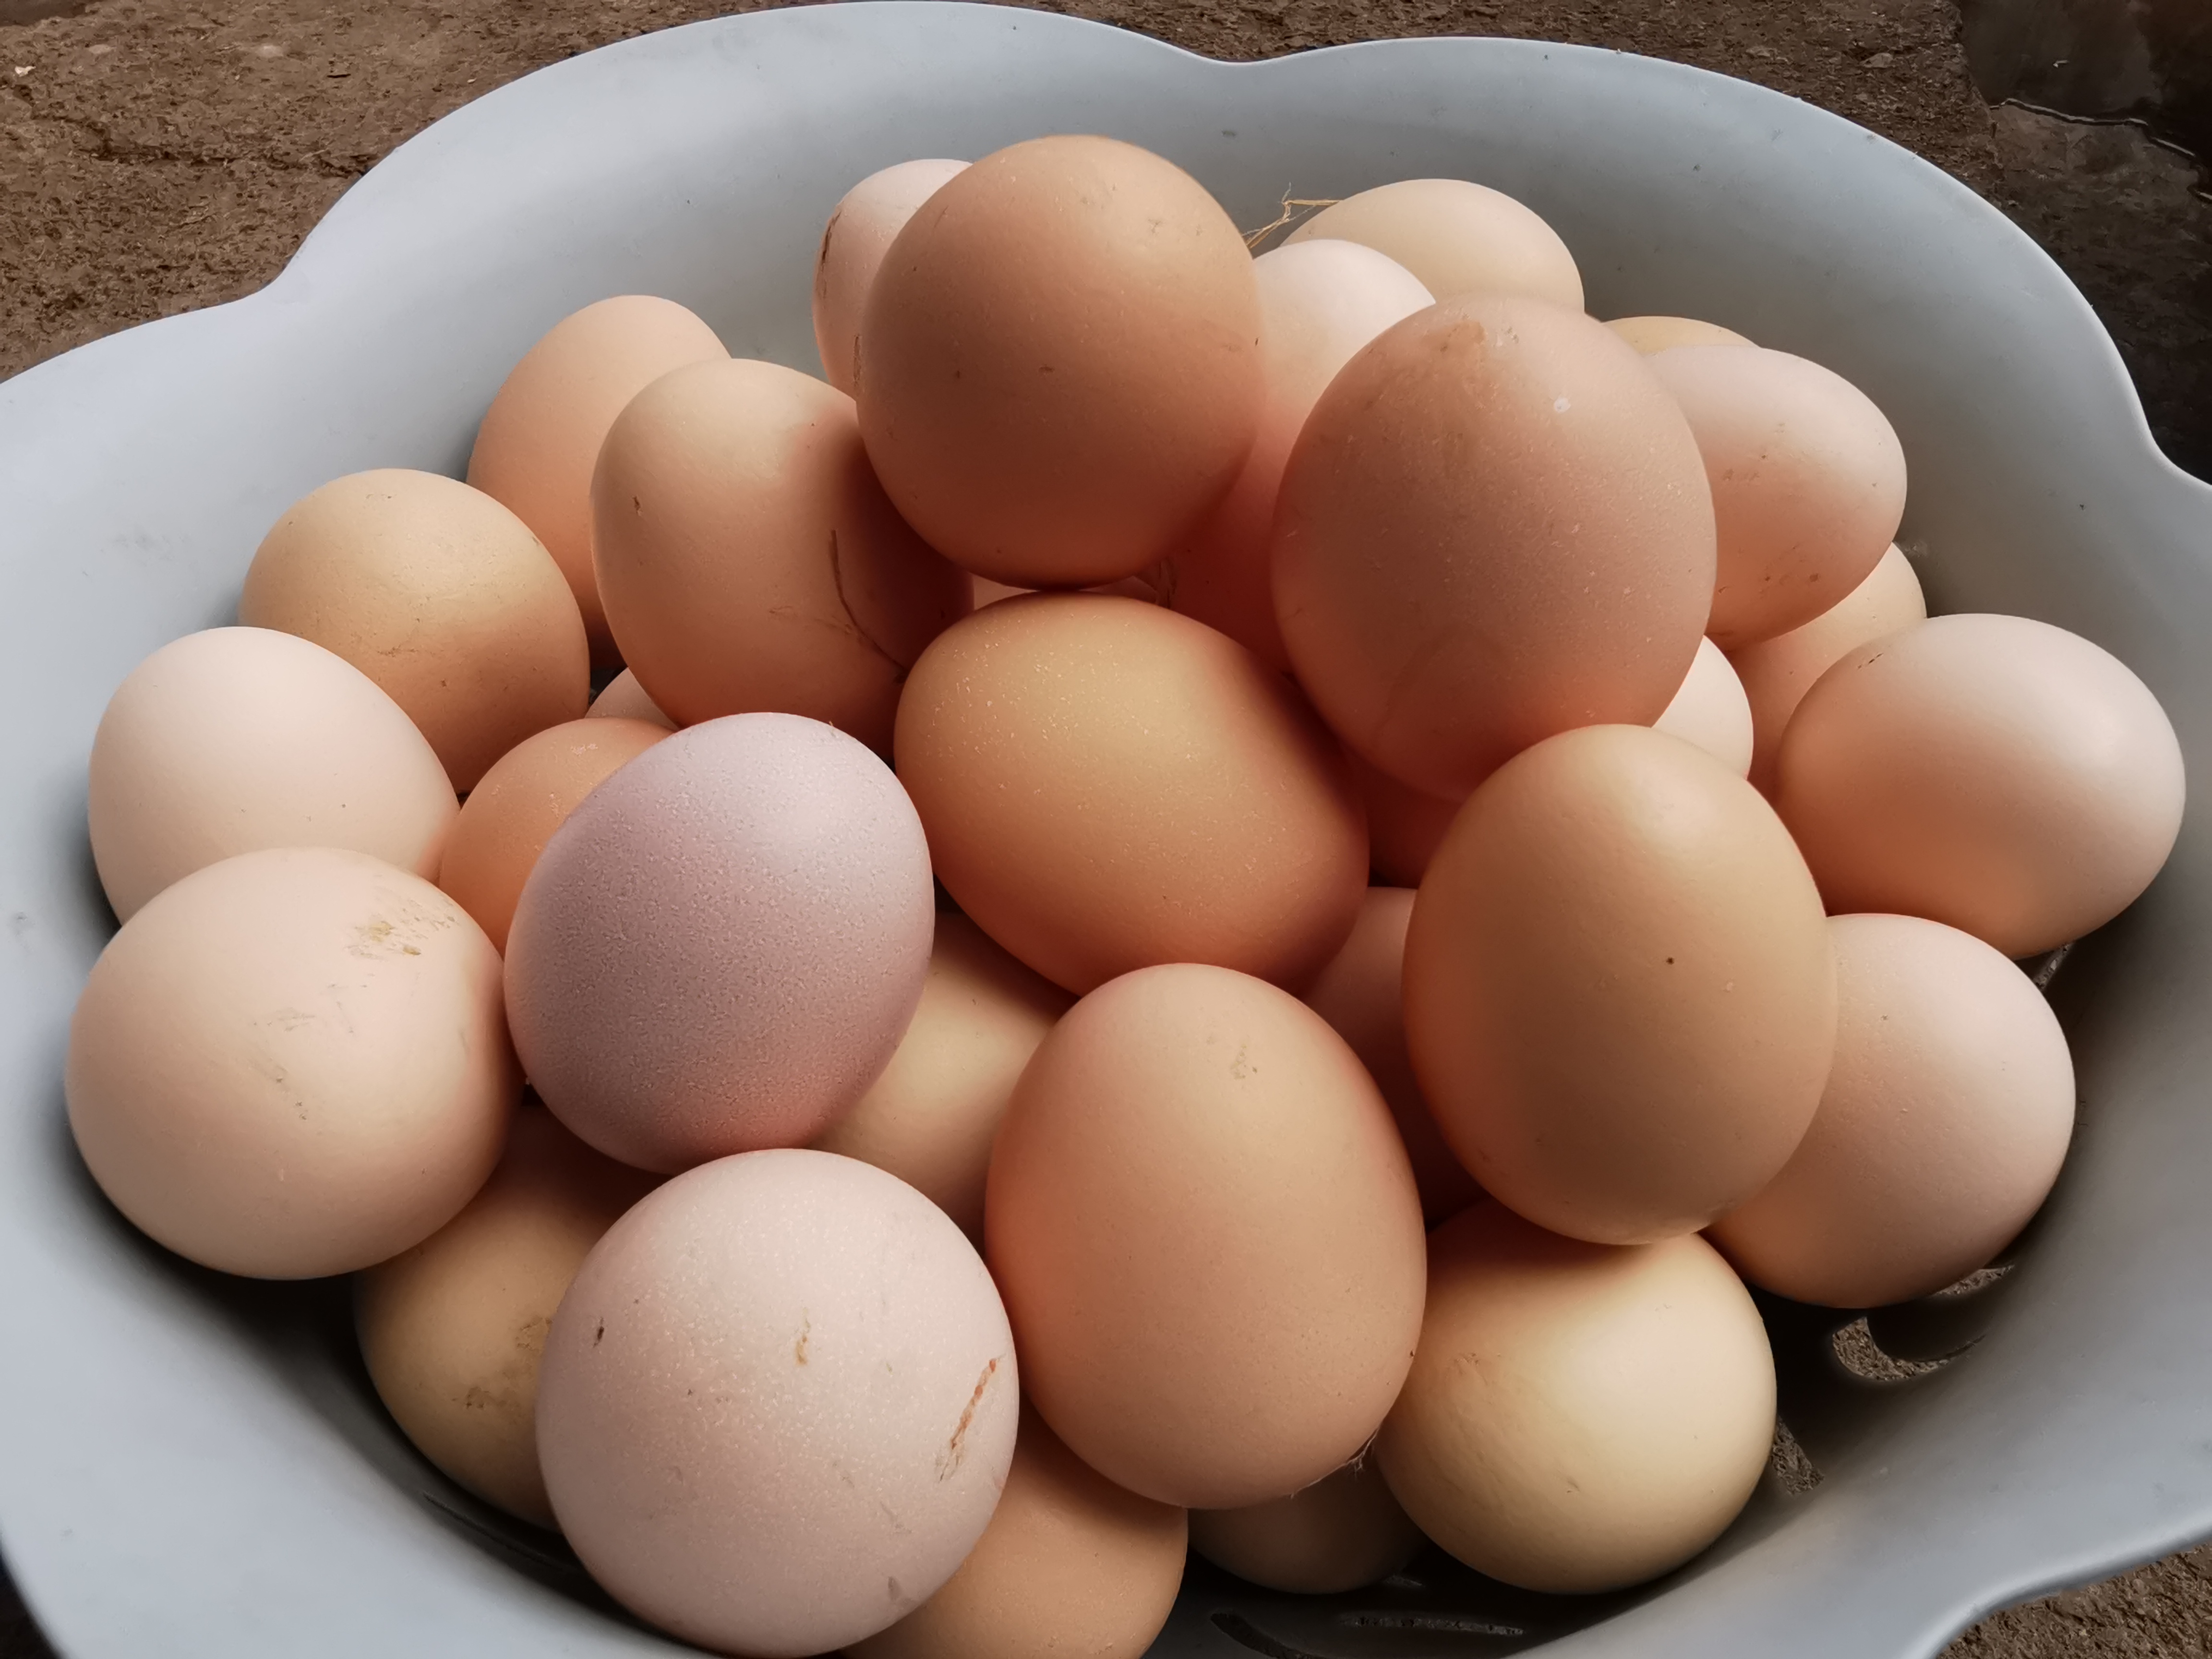 新鲜土鸡蛋 正宗农村放养天然60枚装草鸡蛋 土鸡蛋 笨鸡蛋 土鸡蛋